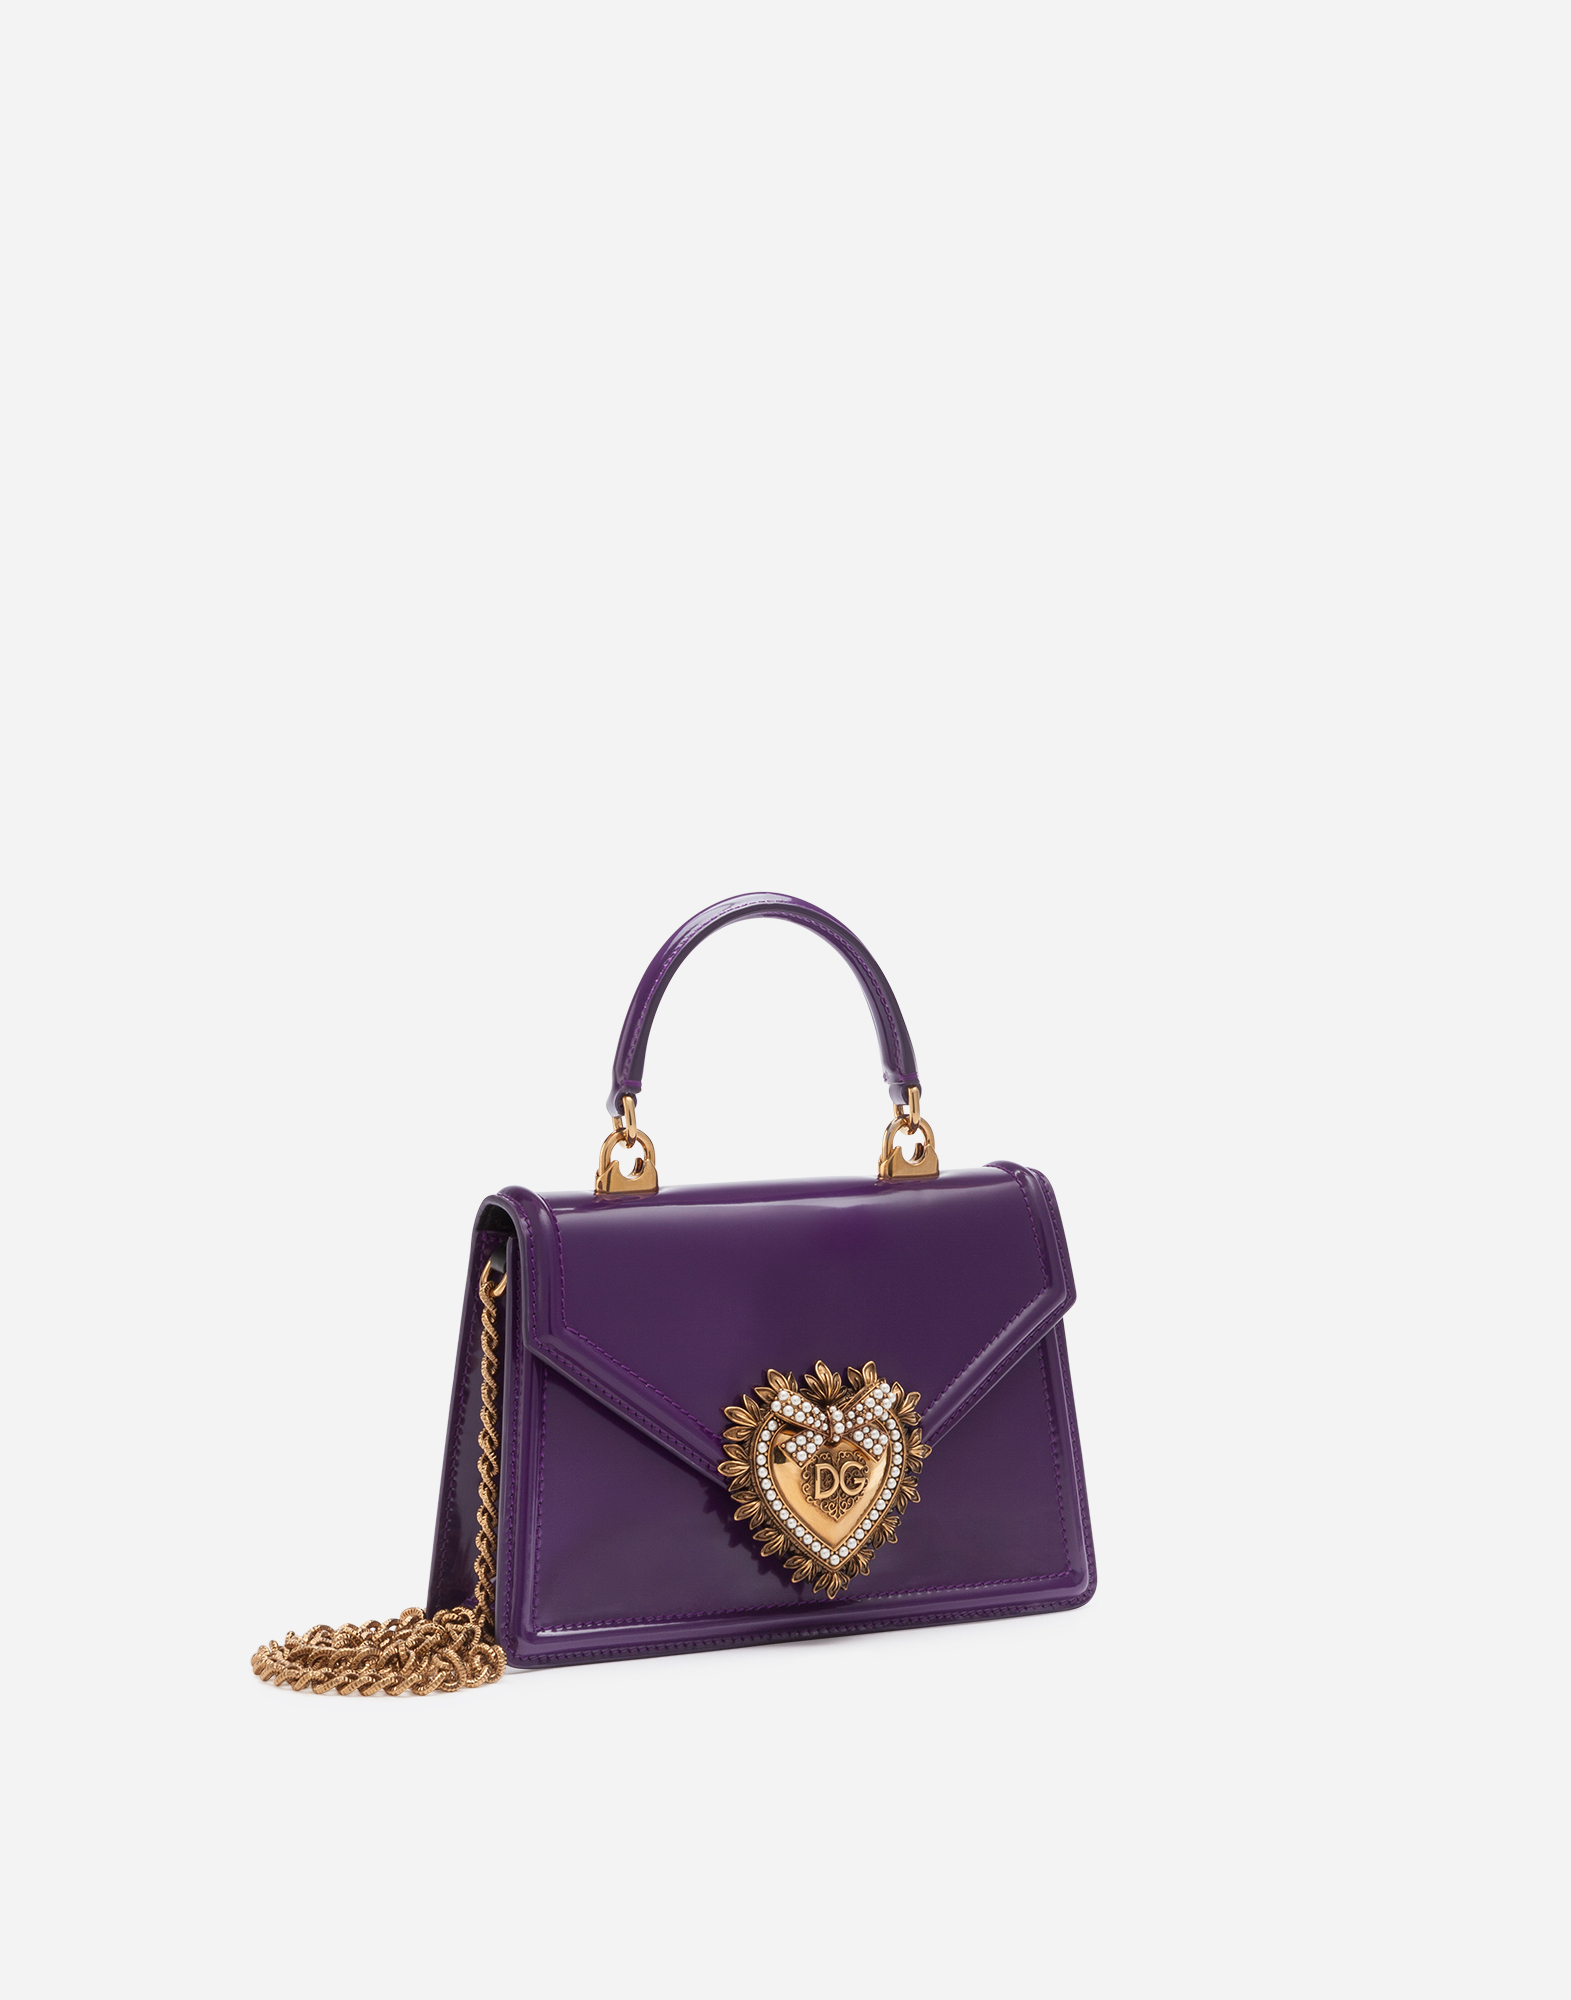 dolce and gabbana purple bag